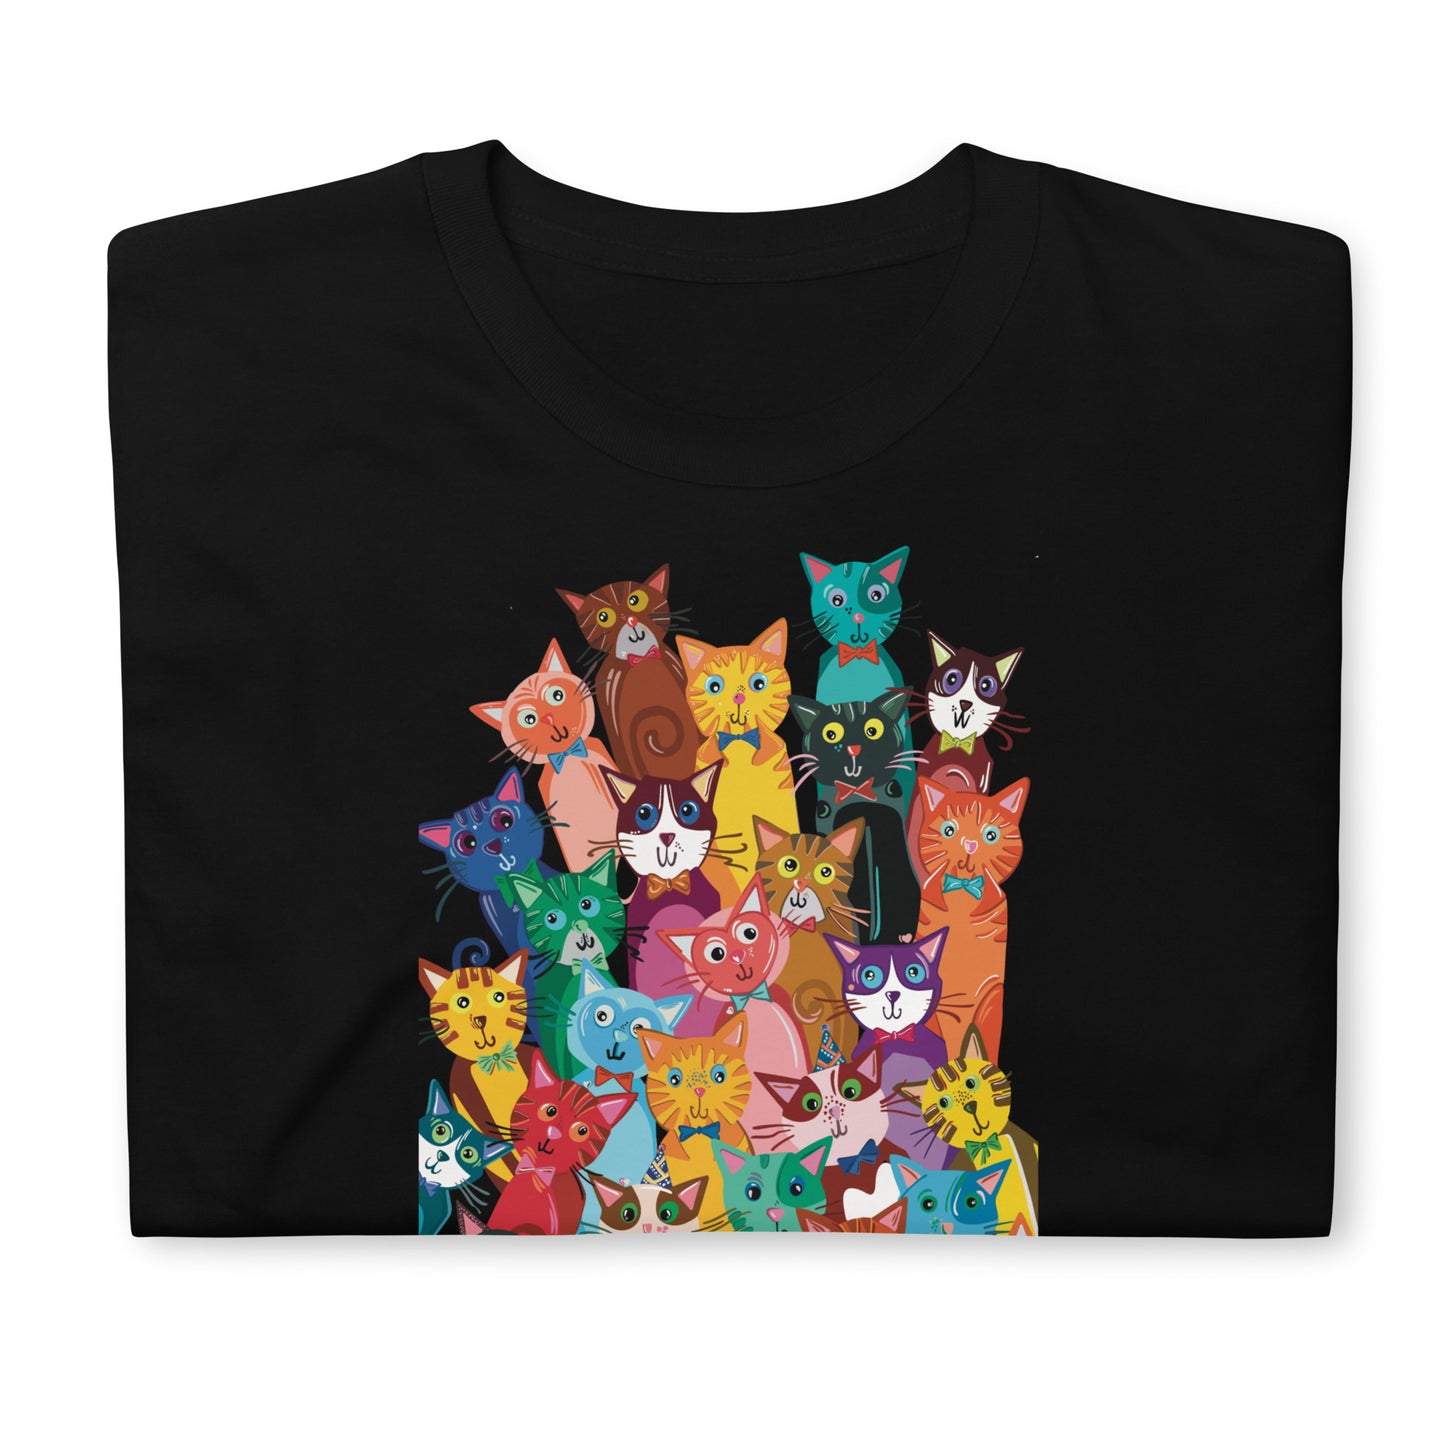 Unisex marškinėliai: katinų krūva